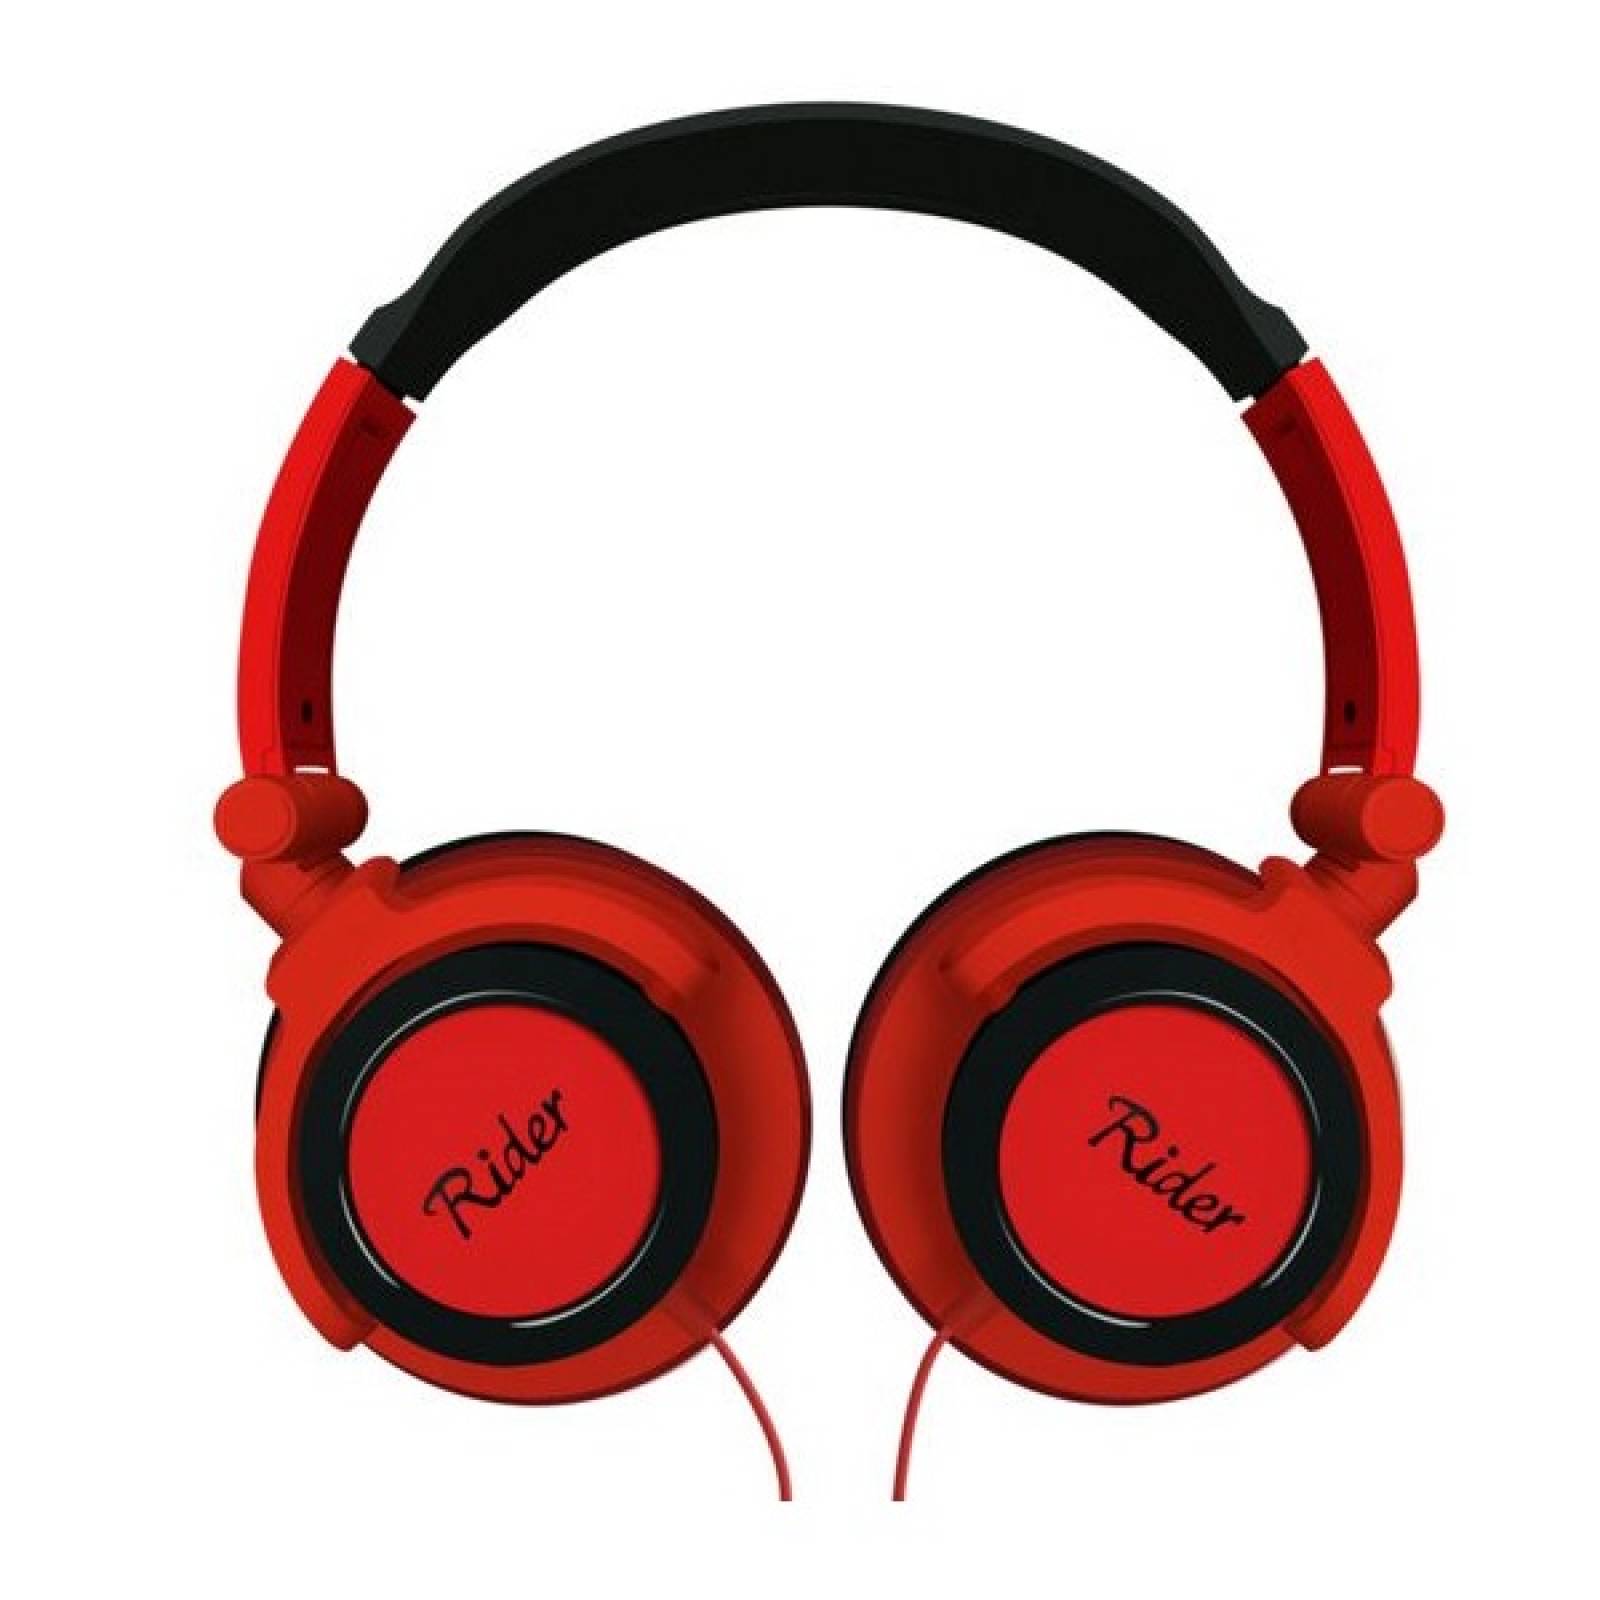 Audifonos Ridgeway On ear Ajuste perfecto EAR105 Rojo - Reacondicionado